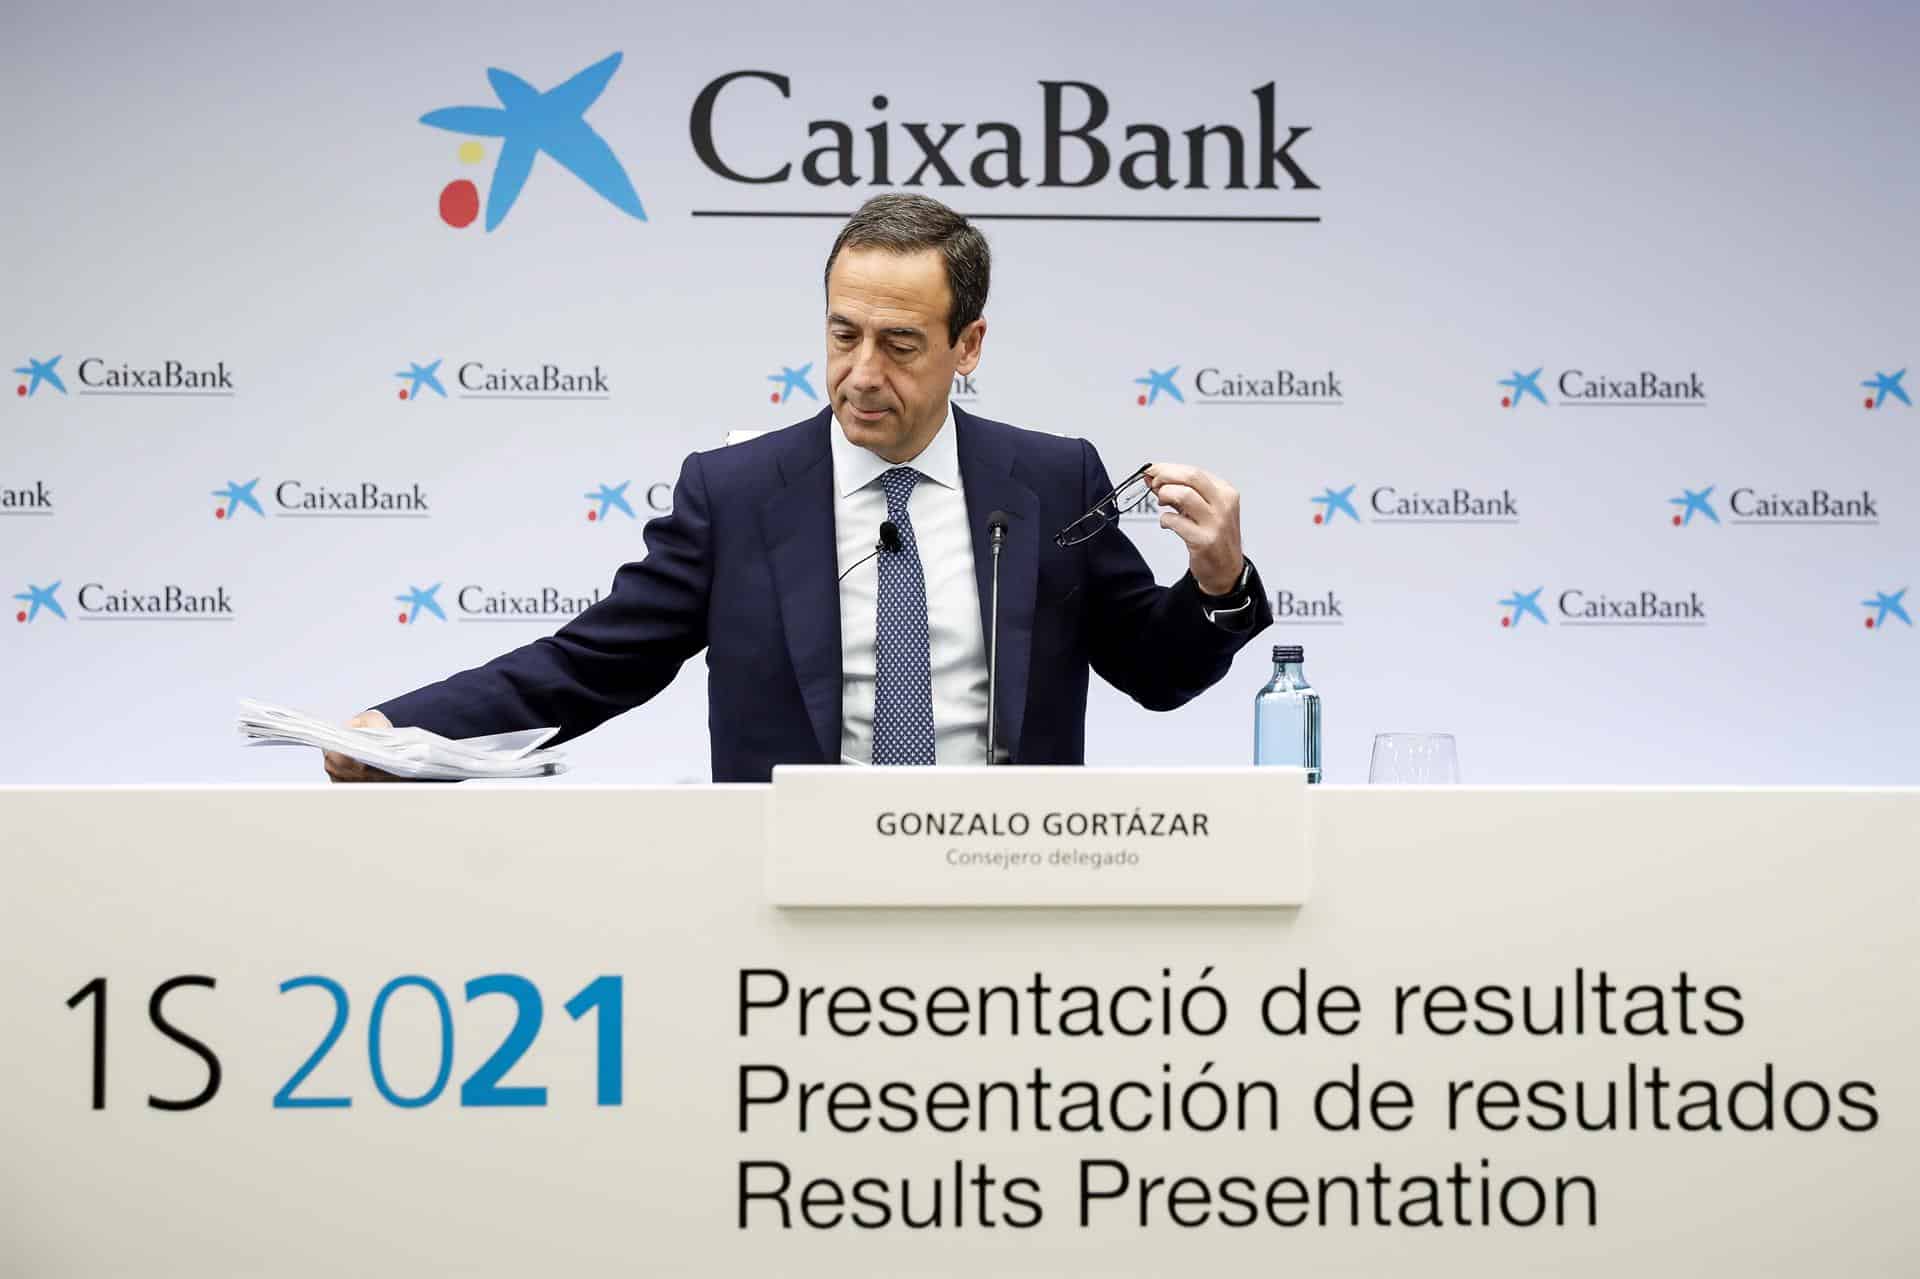 El consejero delegado de CaixaBank, Gonzalo Gortázar, presenta los resultados del primer semestre tras su fusión con Bankia